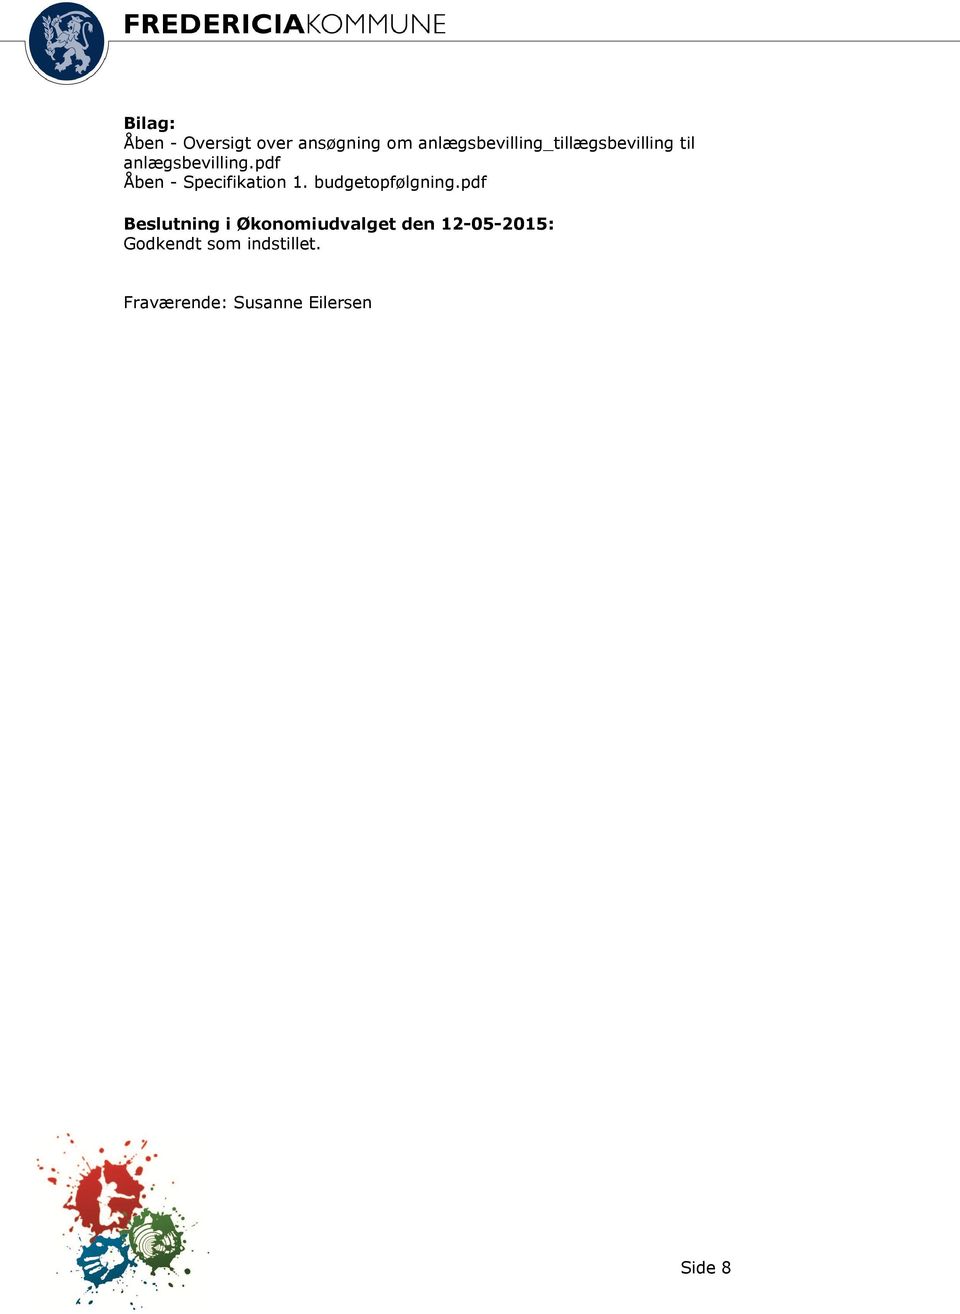 pdf Åben - Specifikation 1. budgetopfølgning.